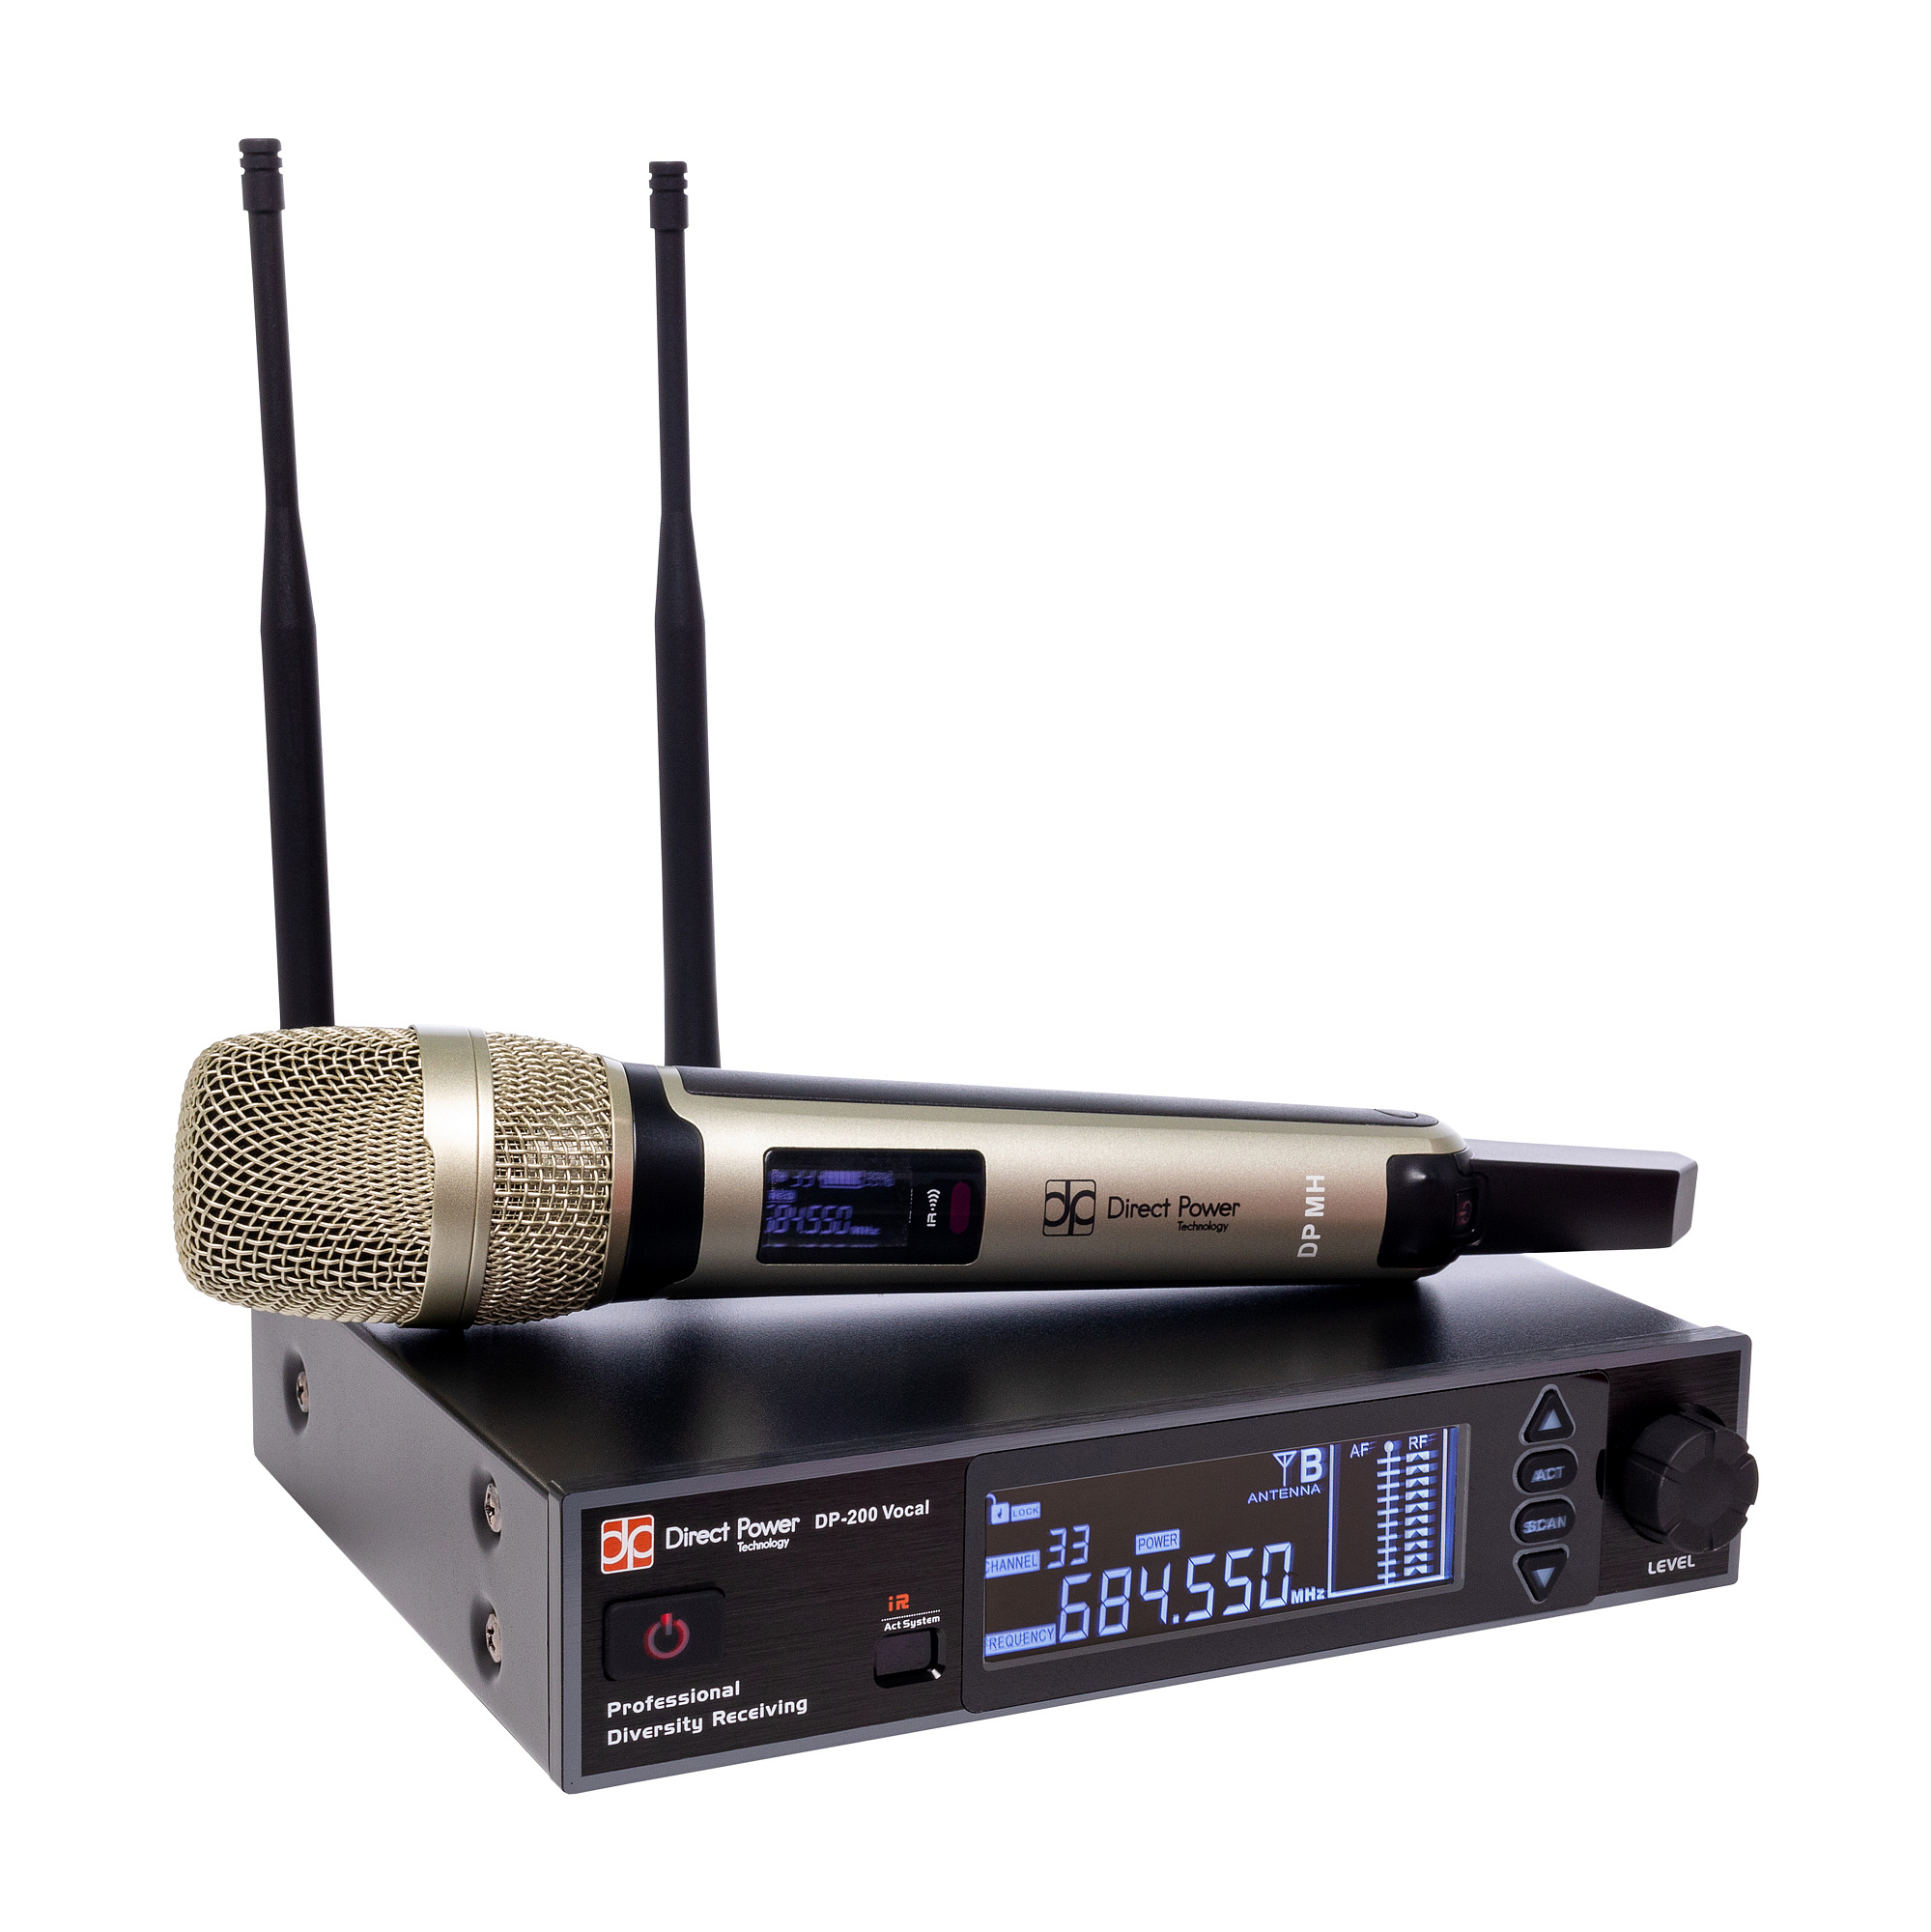 Direct Power Technology DP-200 VOCAL вокальная радиосистема с ручным передатчиком и ЖК-дисплеем